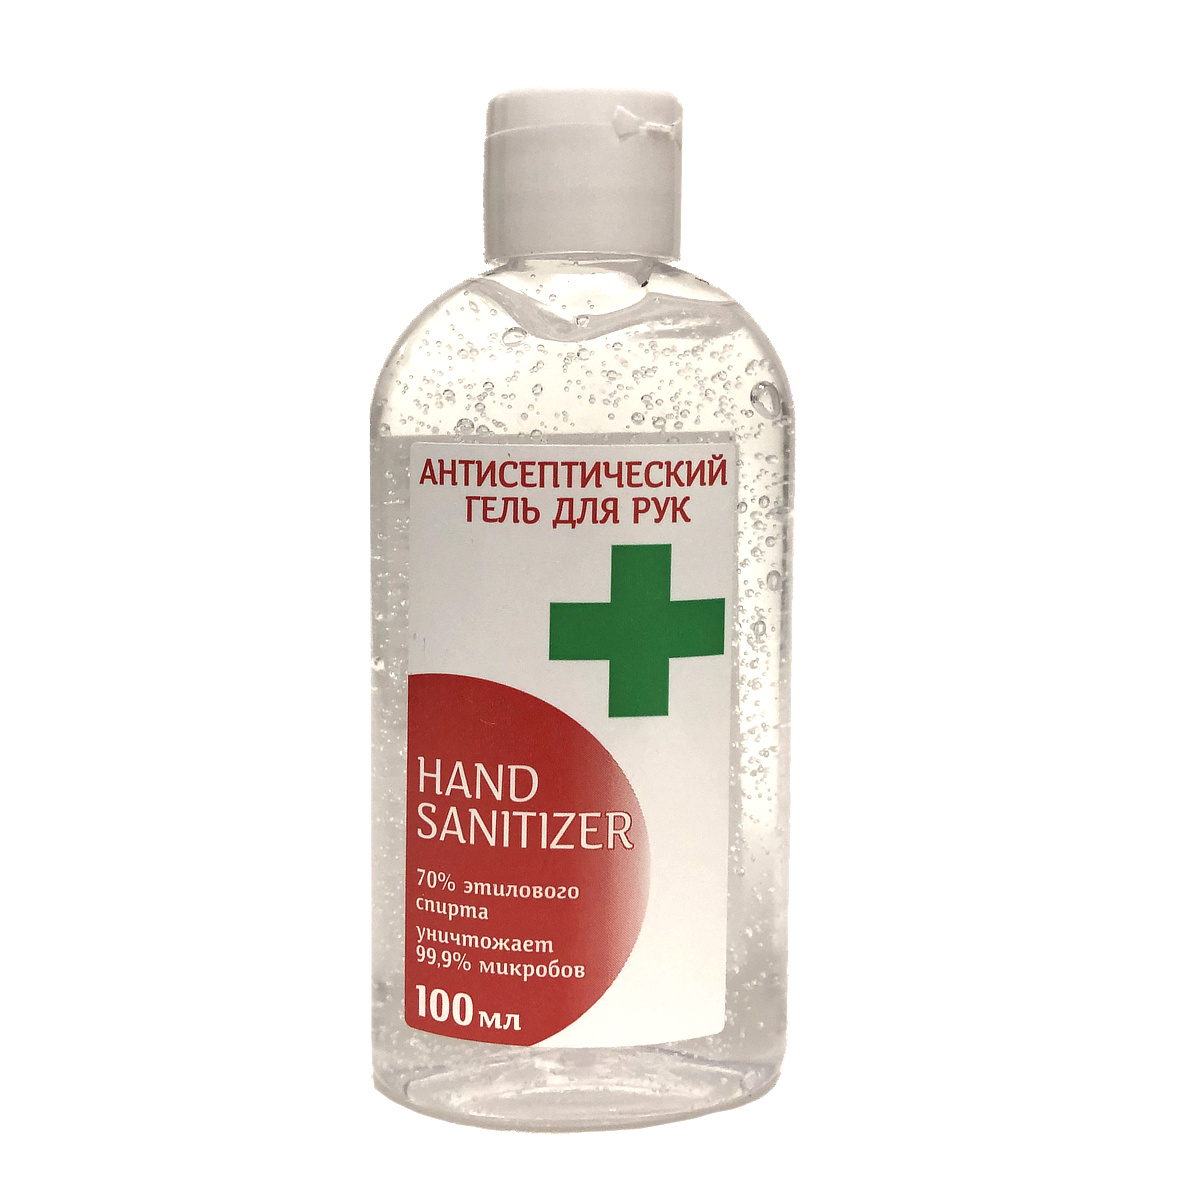 Антисептический гель для рук Hand Sanitizer #1.